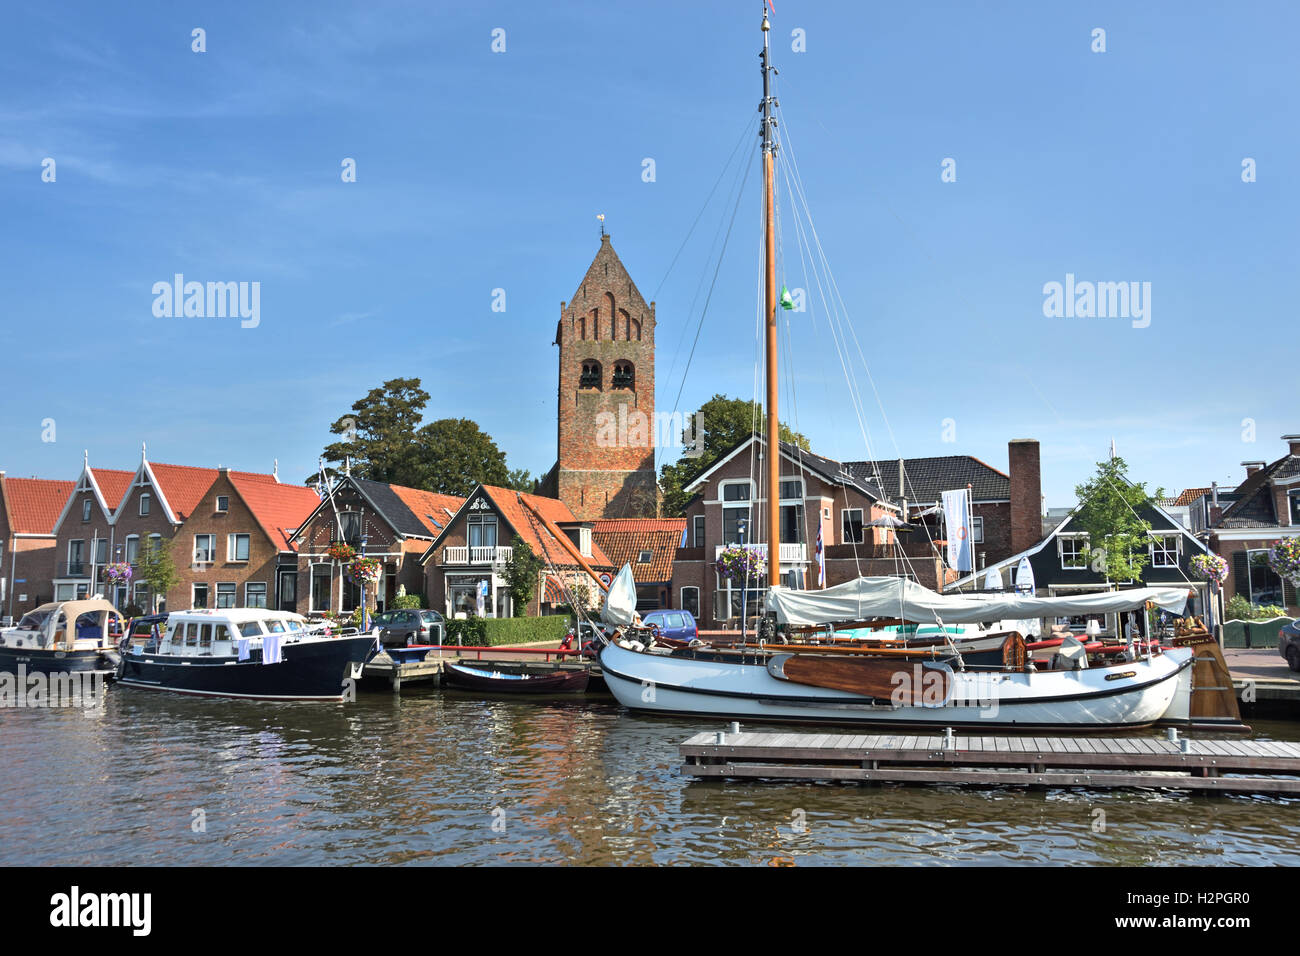 Grou Grouw frise frise Pays-bas Petite ville néerlandaise ( Sint Piter kerk - église ) Banque D'Images